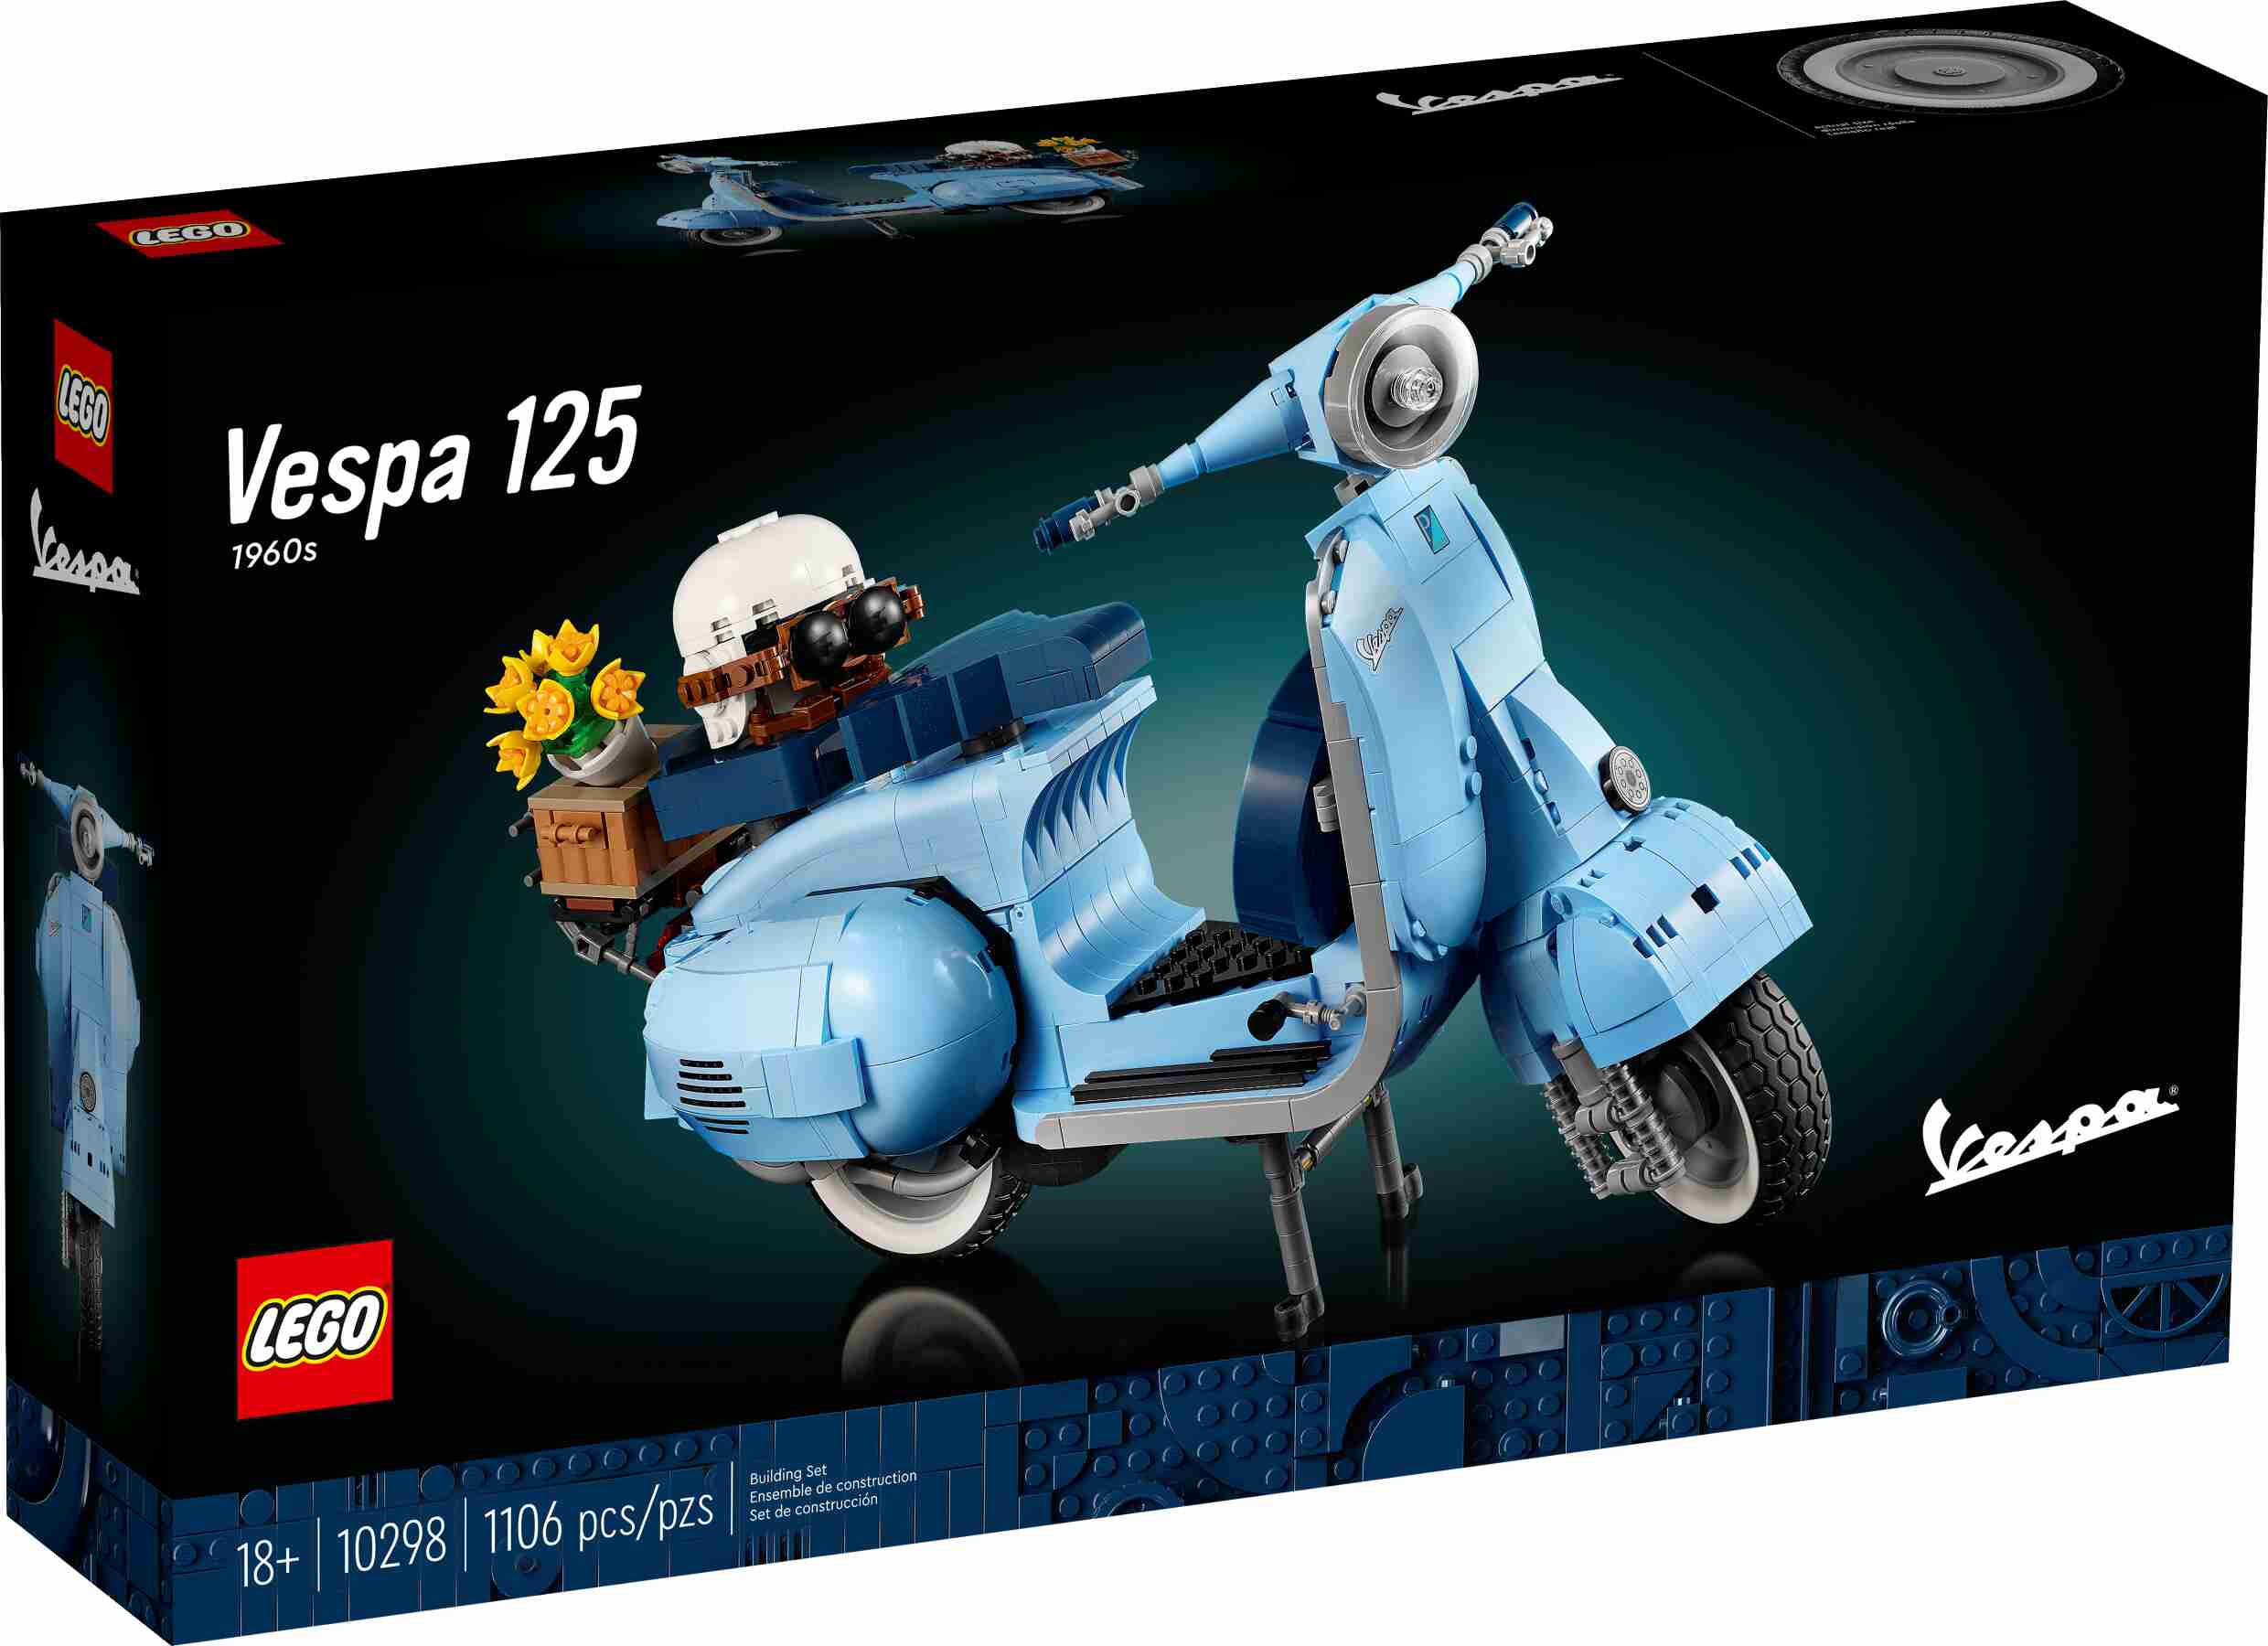 LEGO 10298 ICONS Vespa 125 Modellbausatz, Vespa Piaggio